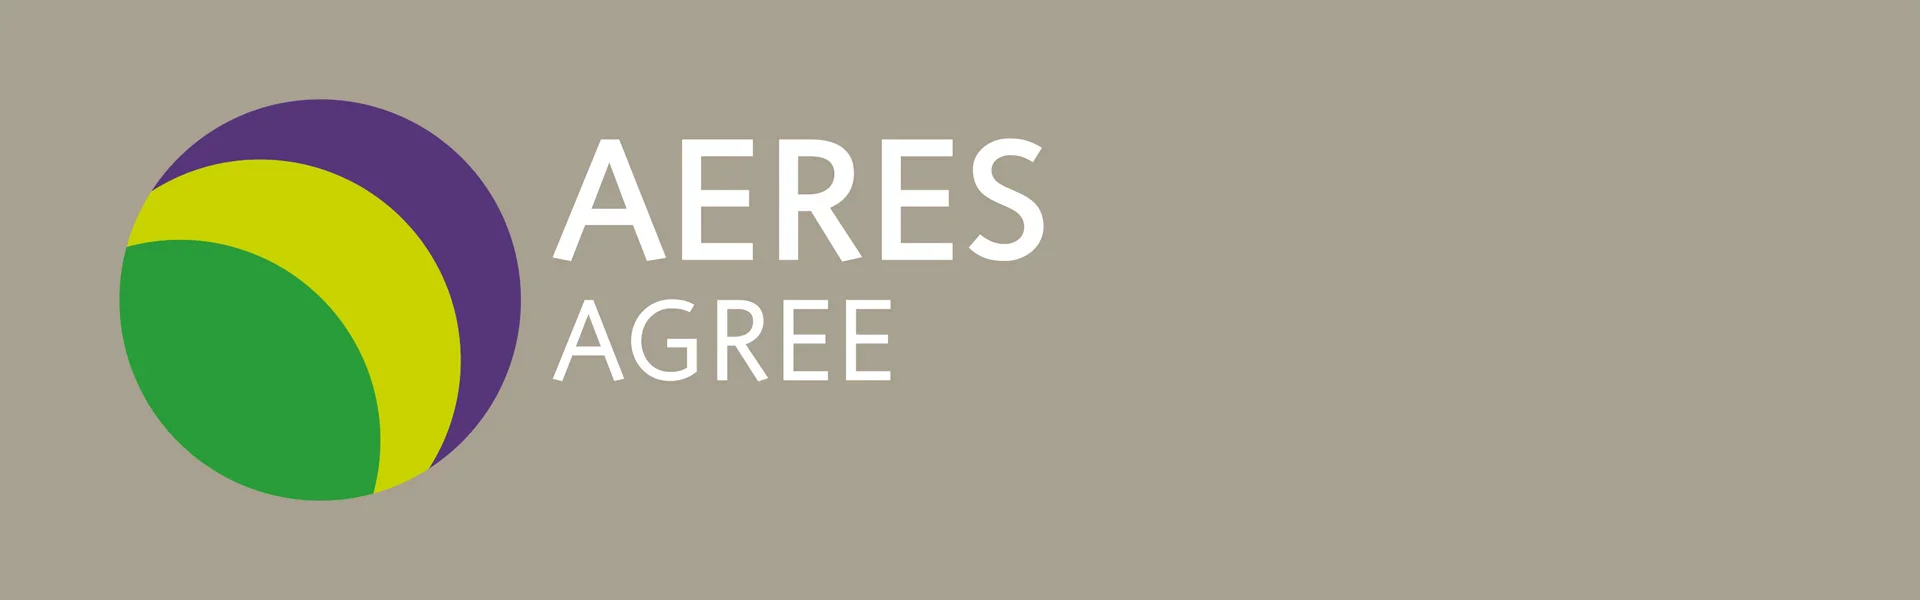 Aeres Agree logo 2016